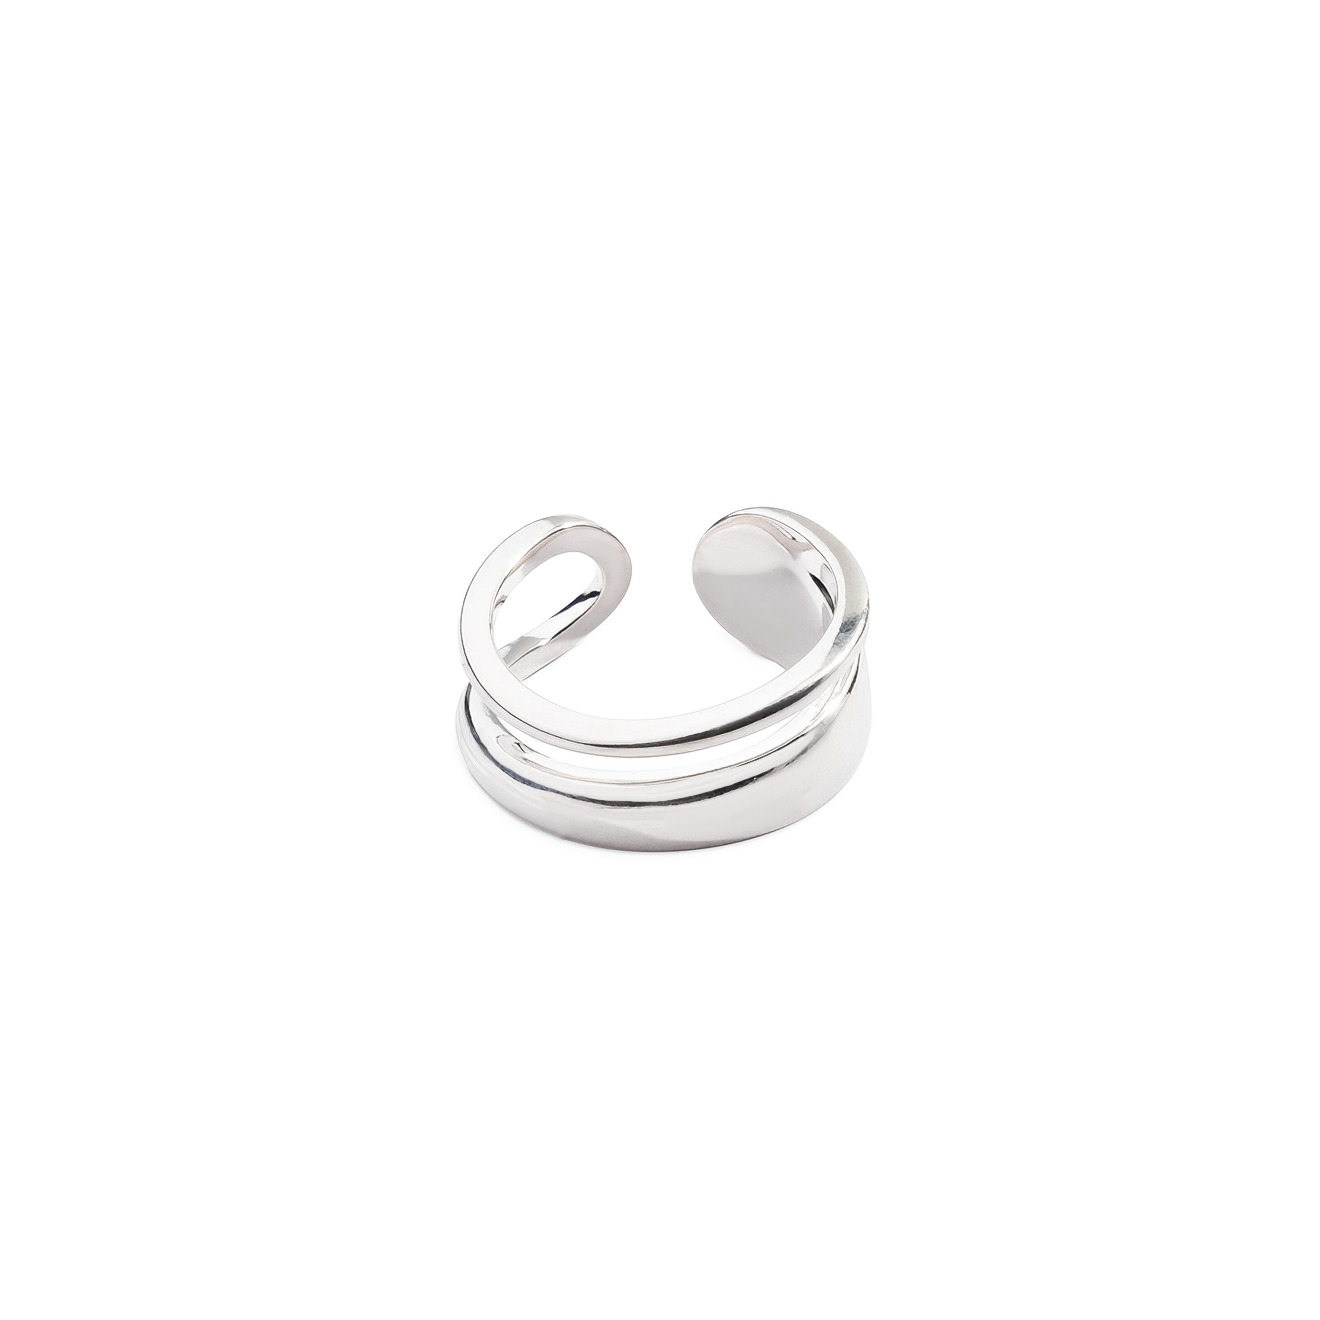 Philippe Audibert Незамкнутое двойное кольцо, покрытое серебром